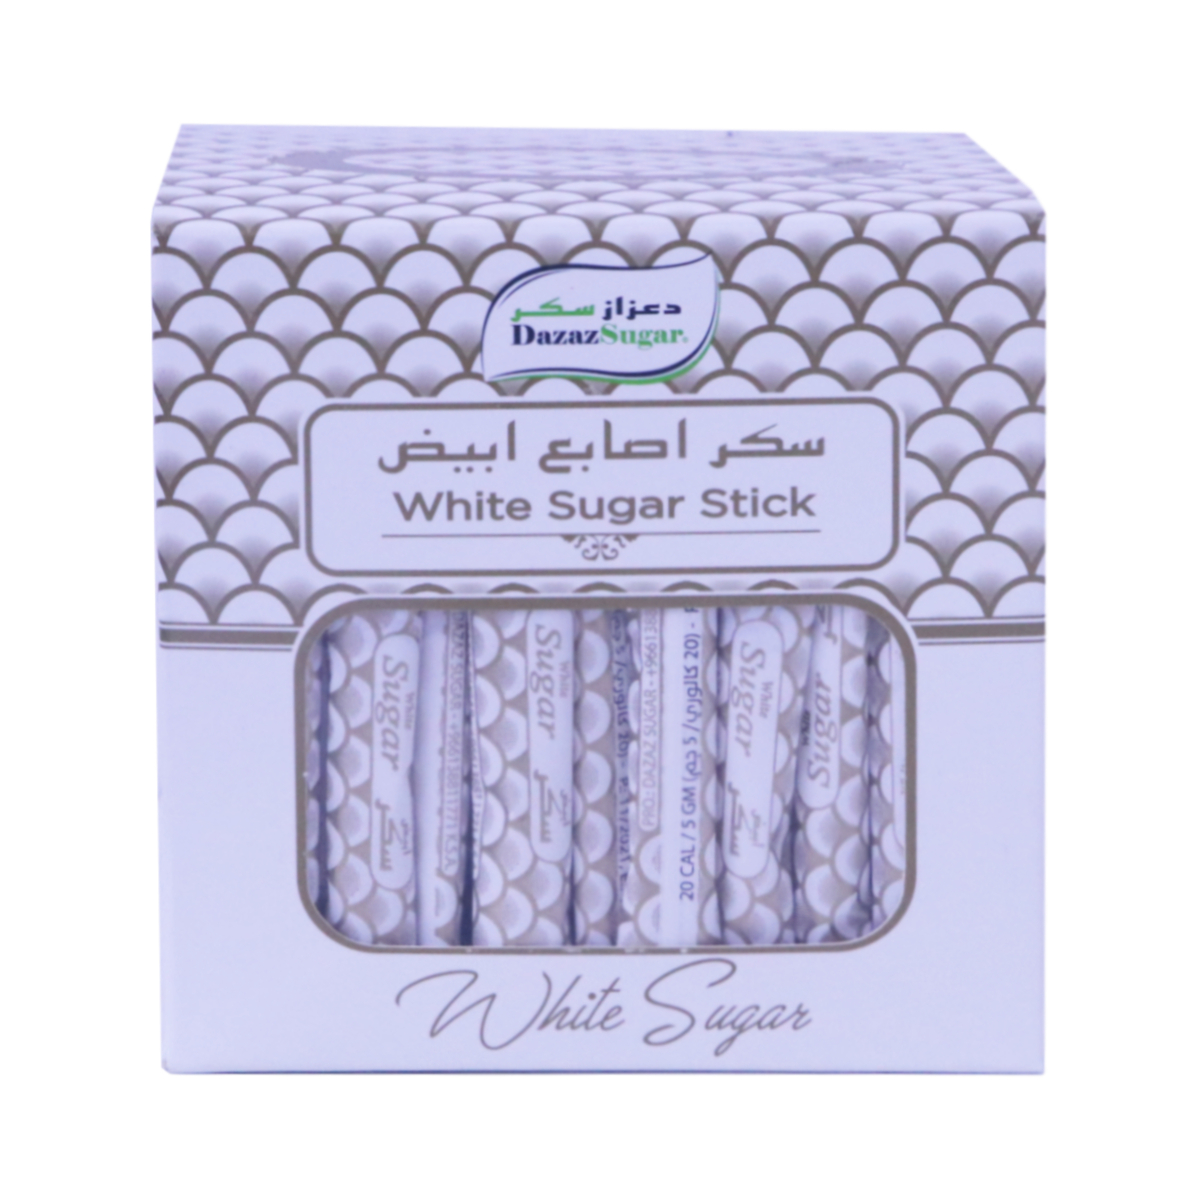 اشتري قم بشراء دعزاز سكر أصابع أبيض 500 جم Online at Best Price من الموقع - من لولو هايبر ماركت White Sugar في السعودية